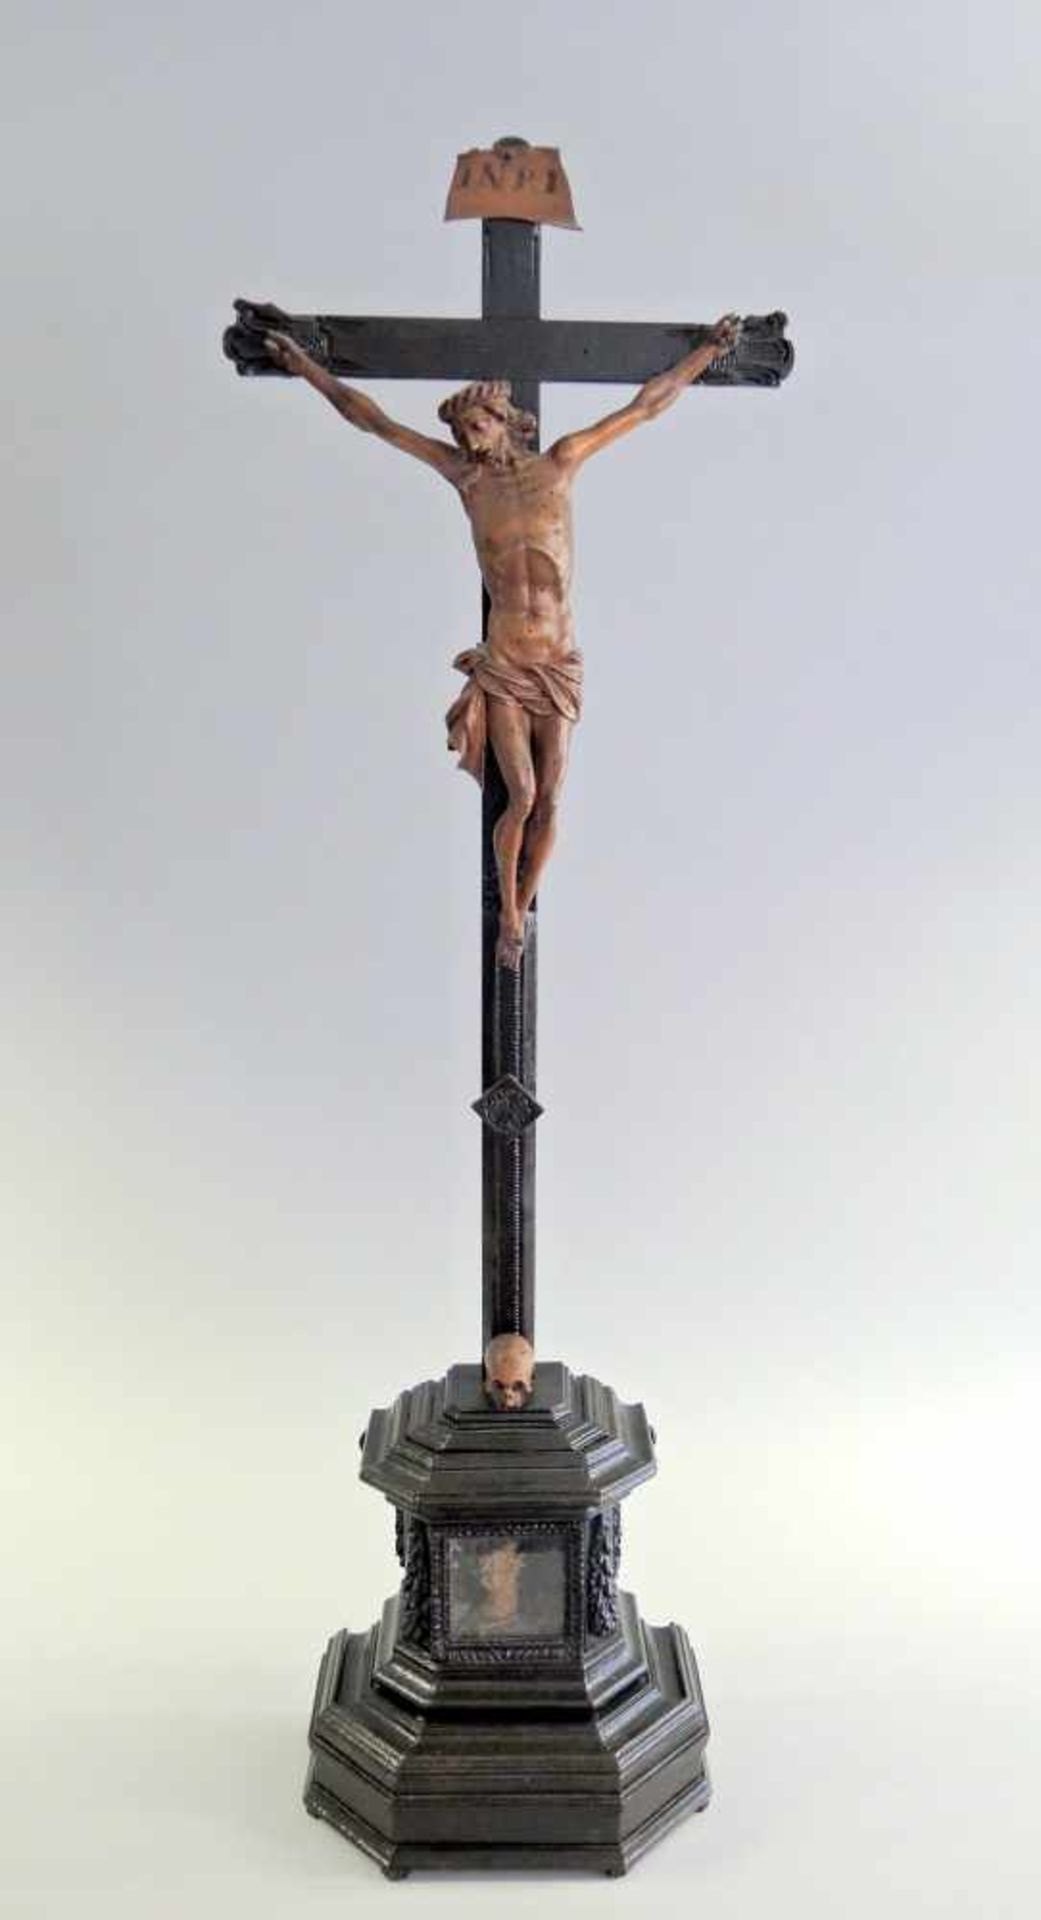 Standkommodenkreuz mit Reliquar Nussbaum geschnitzt, teils schwarz lackiert. Holzfigur Jesu am